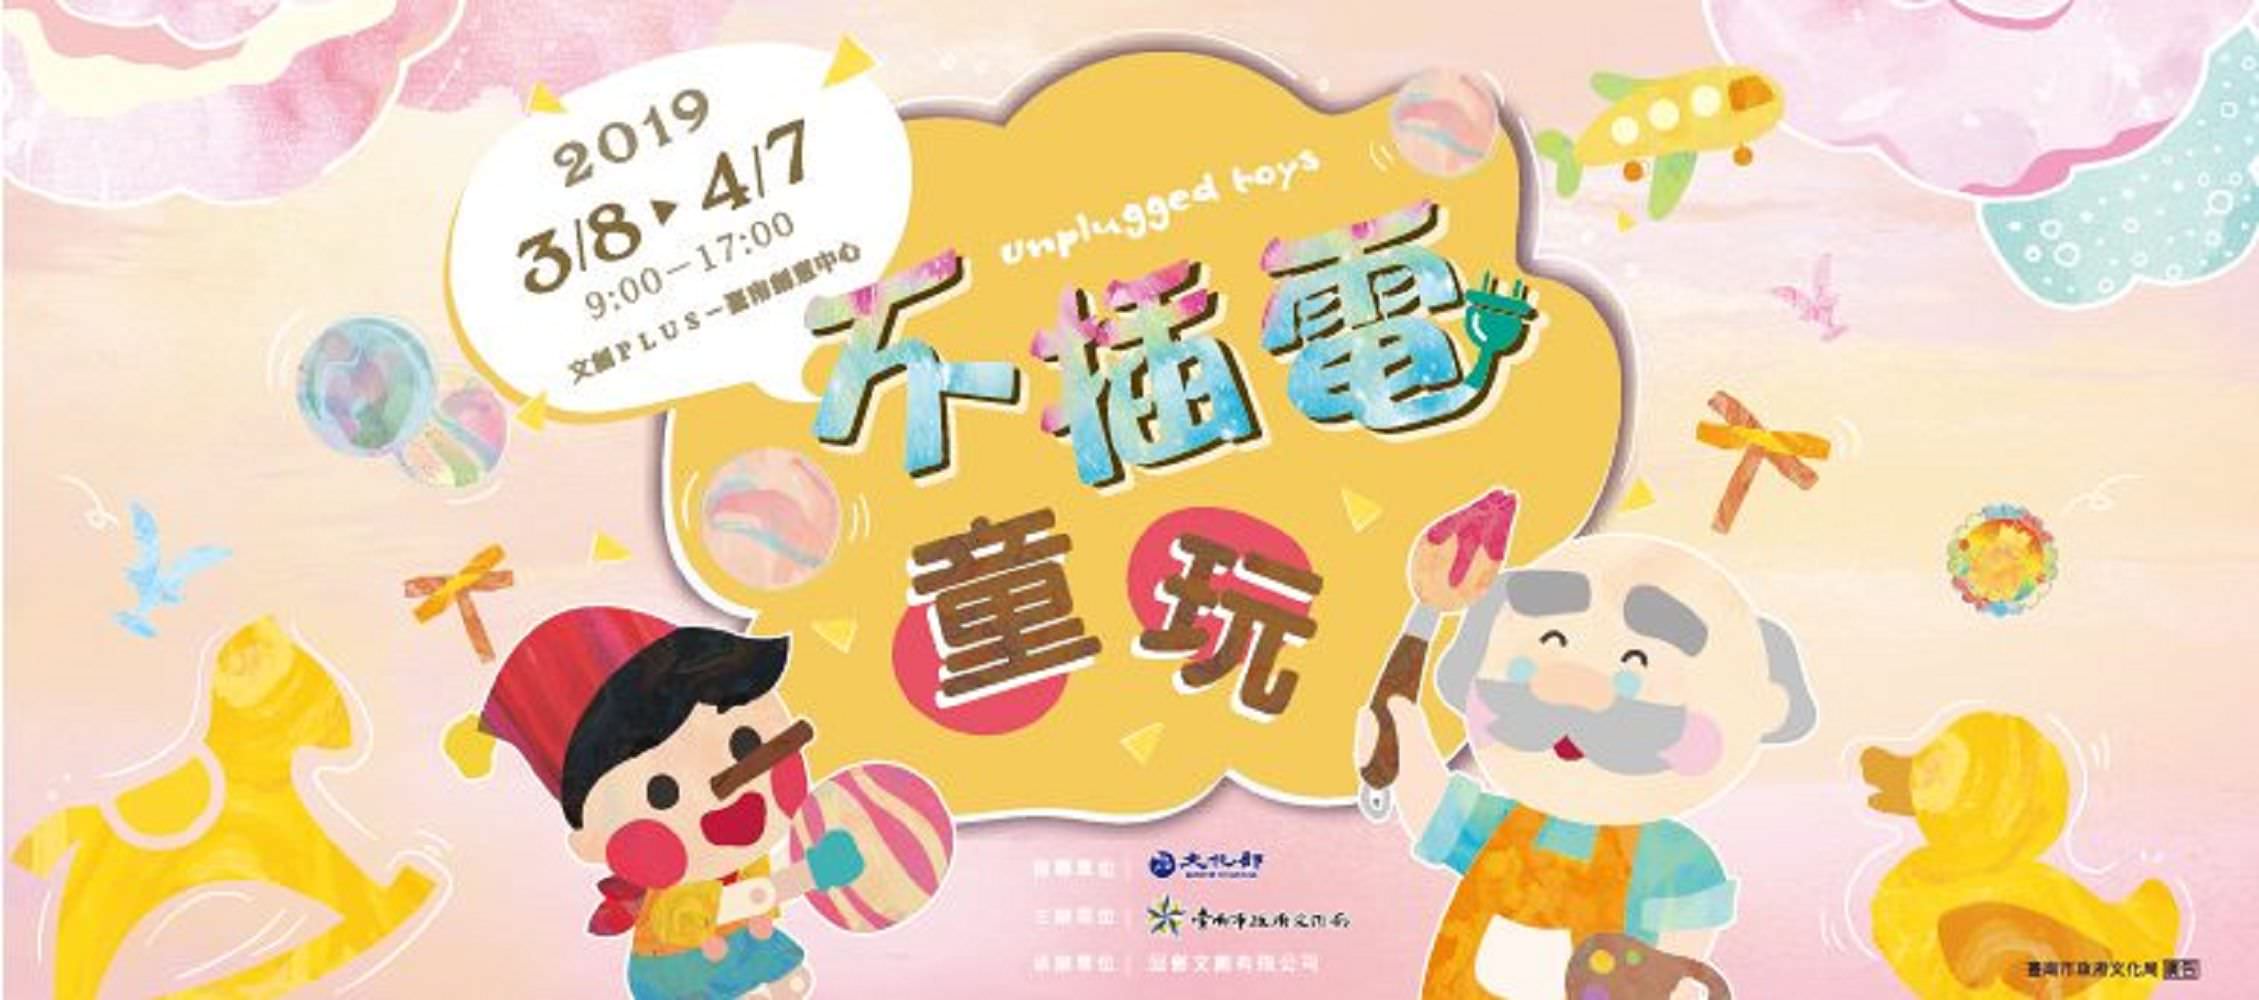 台南活動、台南展覽︱2019年3-4月份一覽表（2019-03更新）